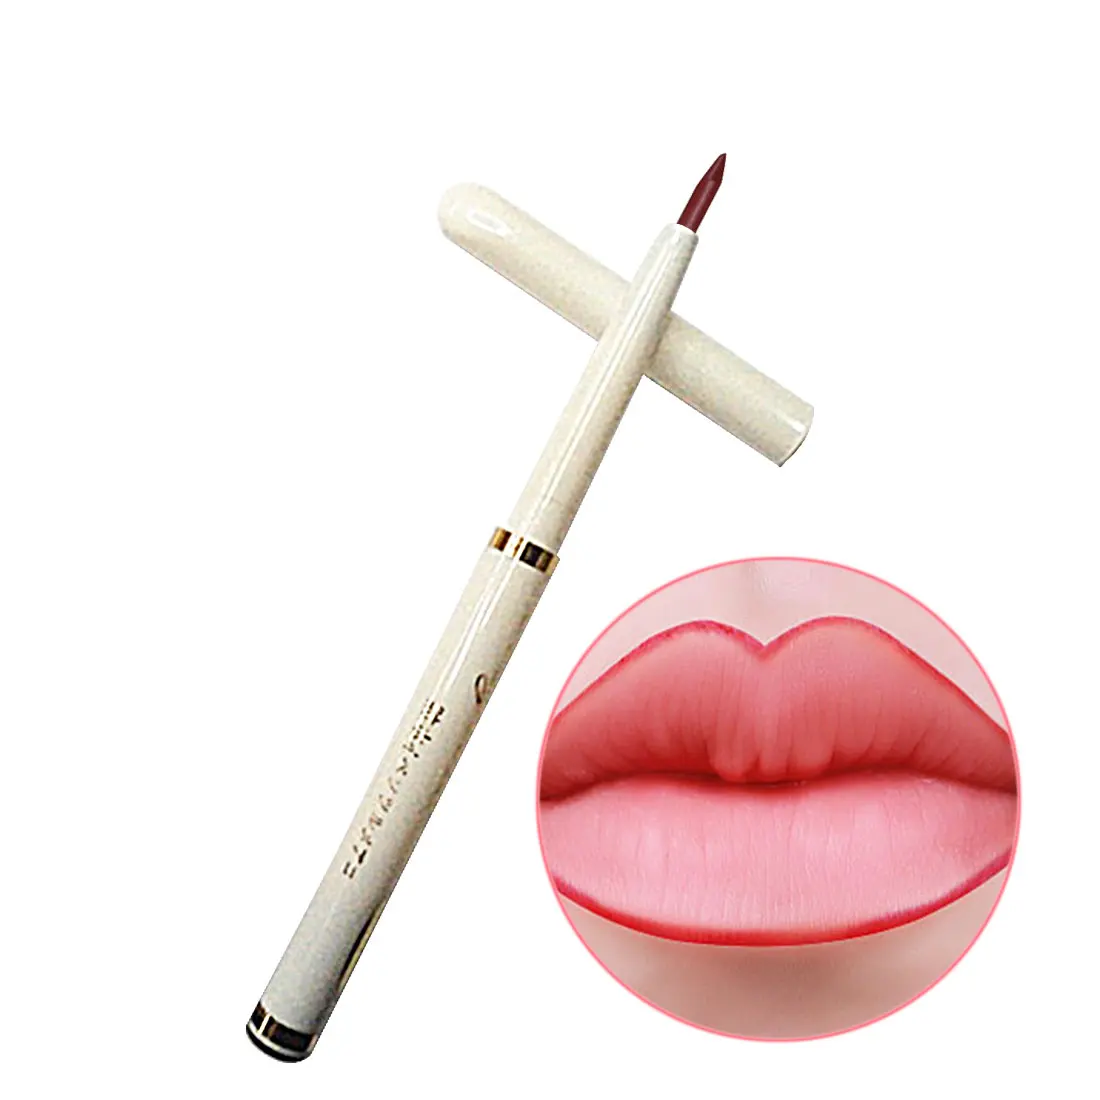 1 шт. автоматический роторный карандаш для губ долговечный натуральный бренд макияж сексуальные продукты леди водонепроницаемый красота карандаш для губ